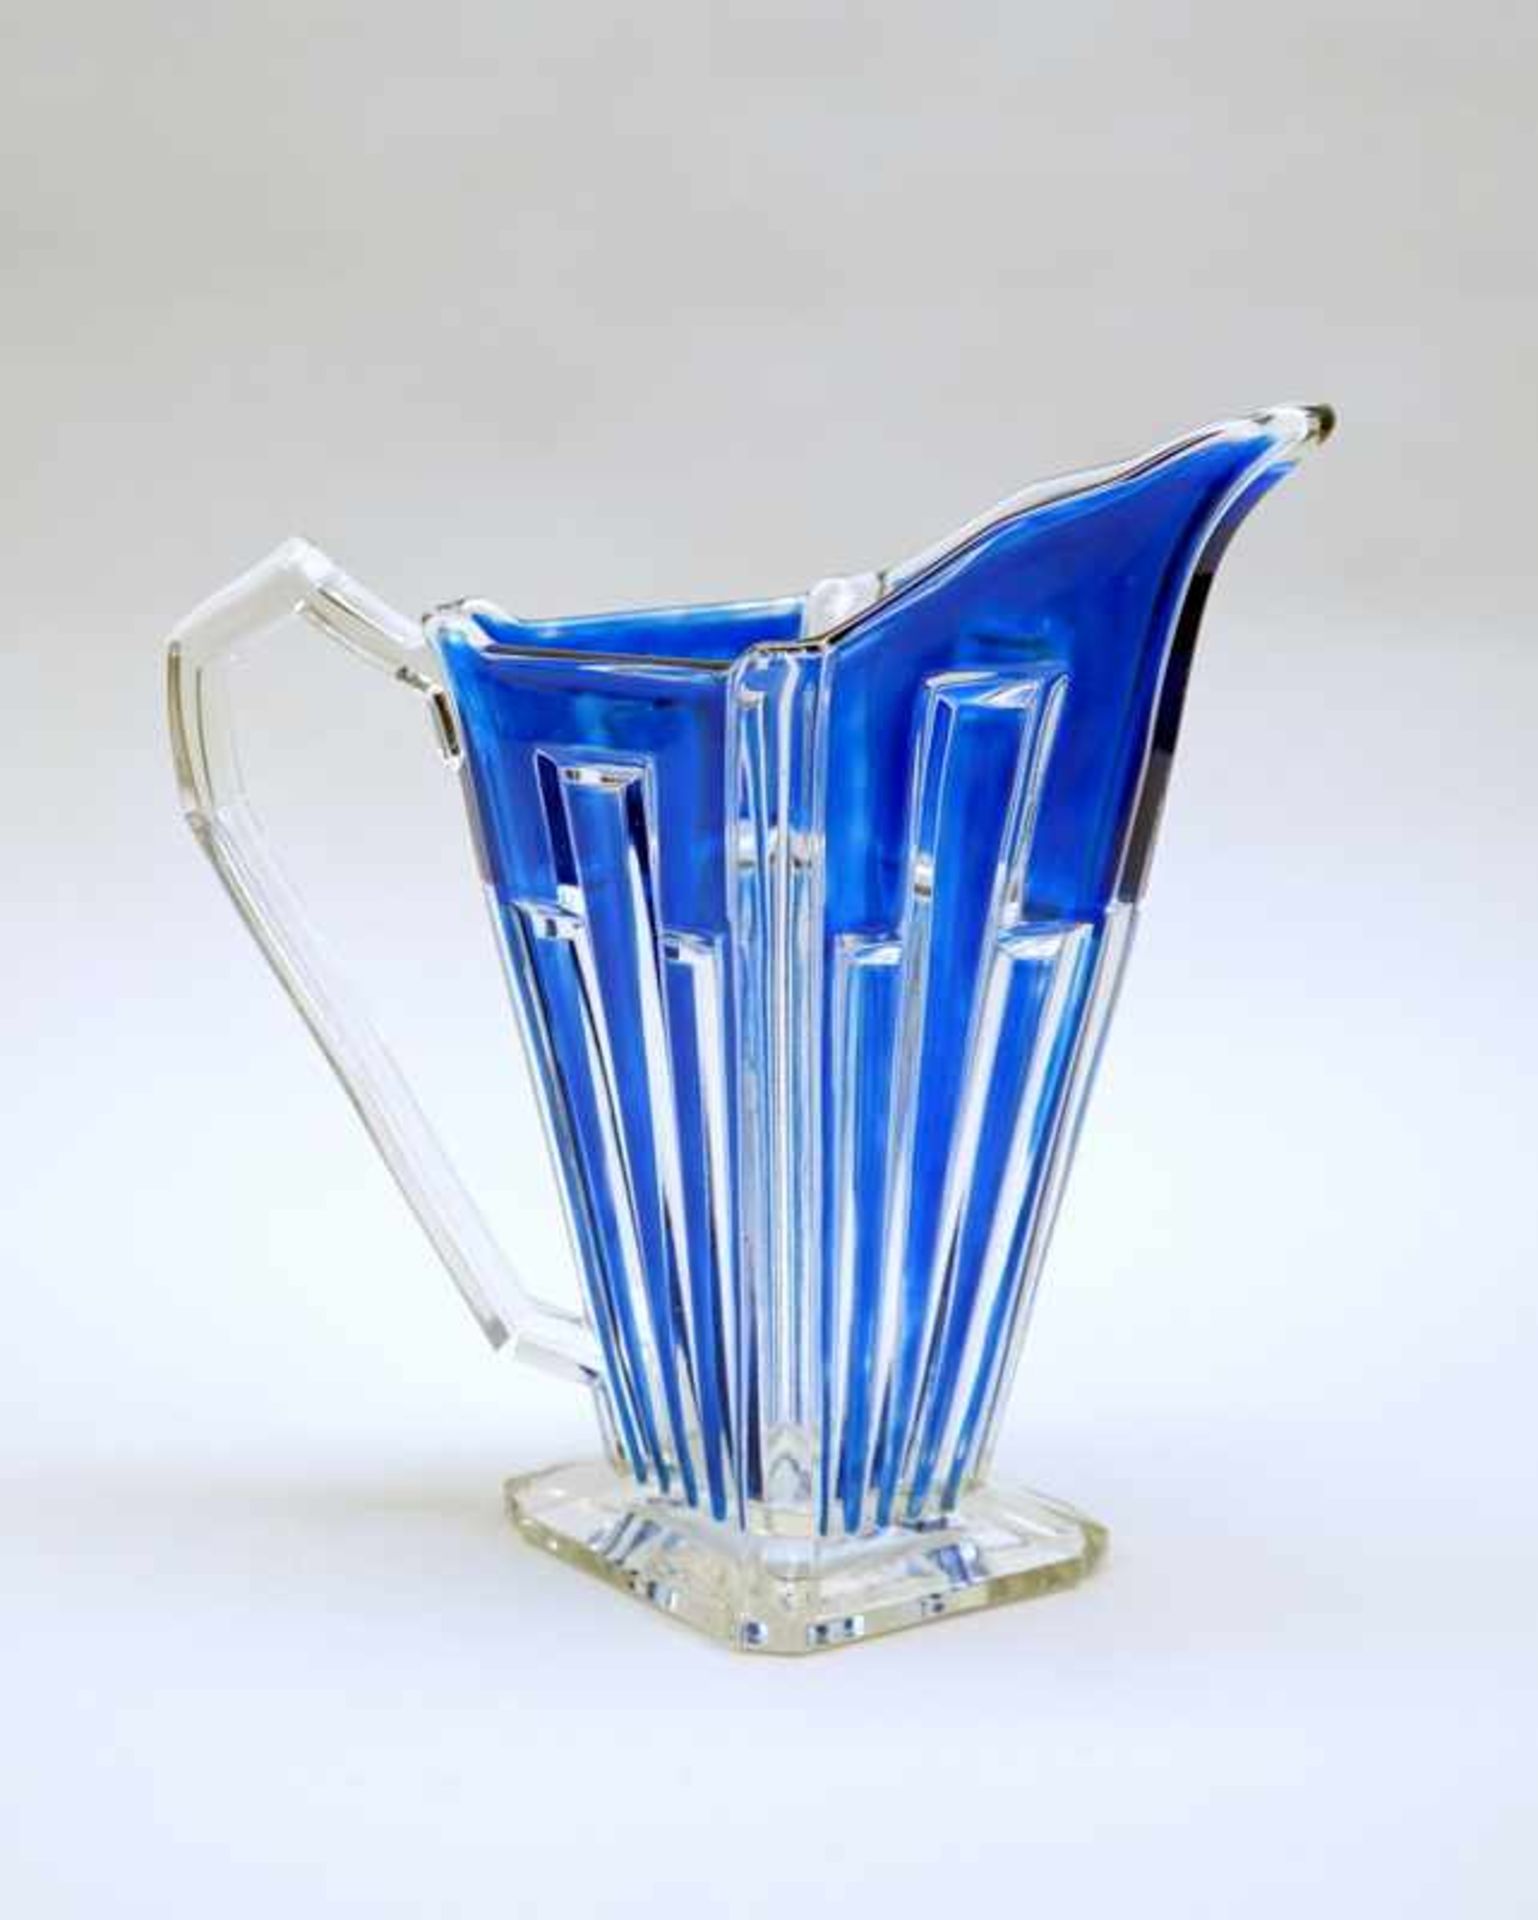 Art déco GlaskrugDurchsichtiges Glas blau emailliert mit geschliffener Oberfläche und